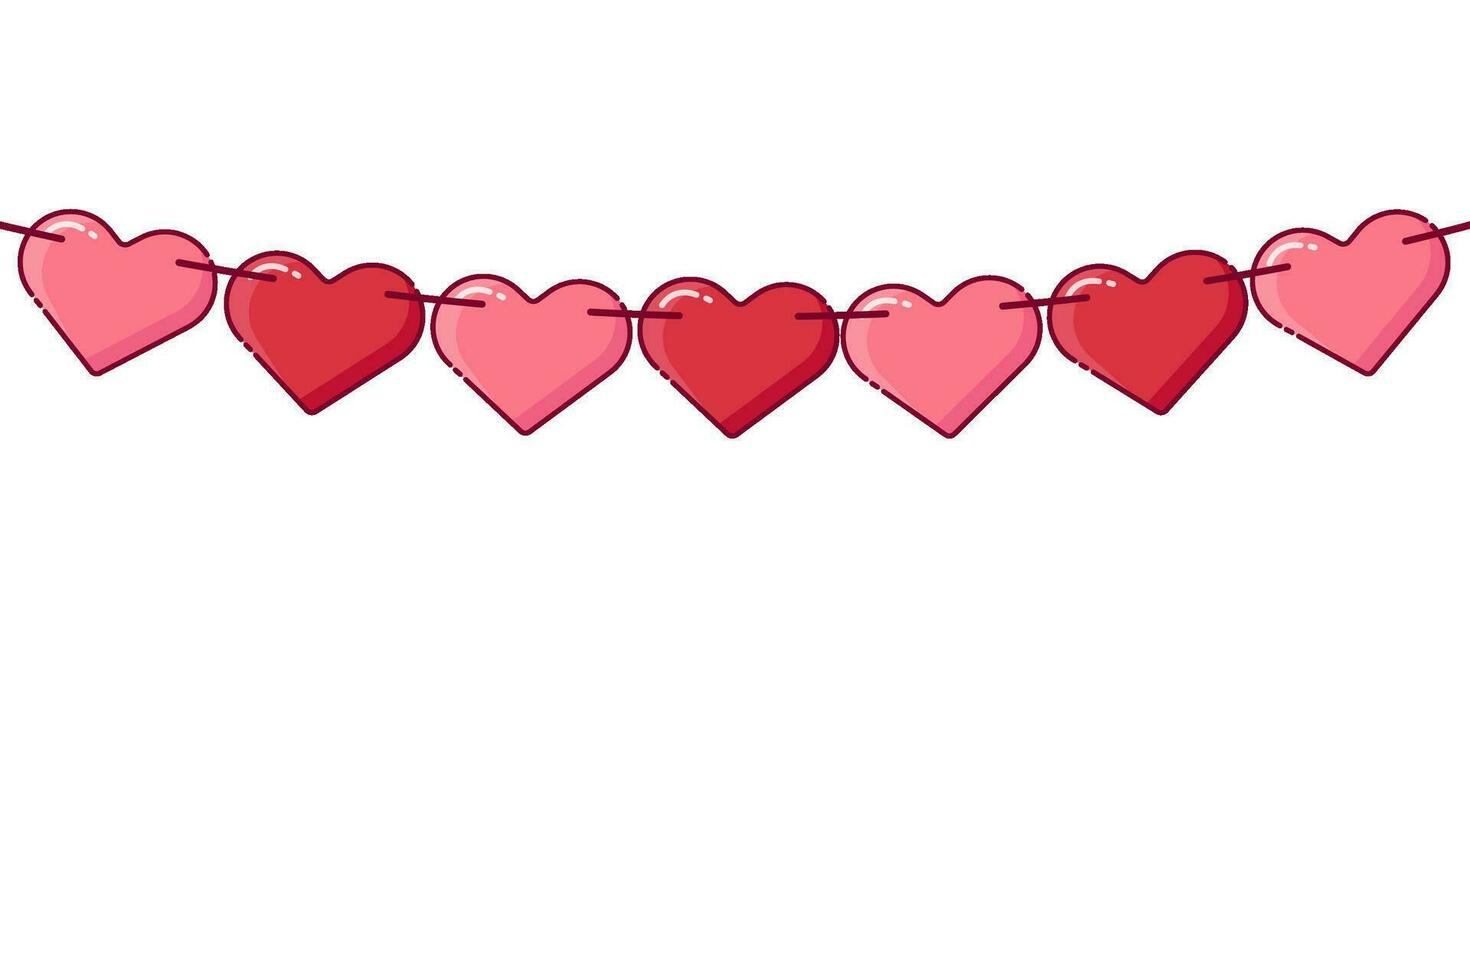 röd papper hjärtan krans för valentines dag kort. vektor illustration.